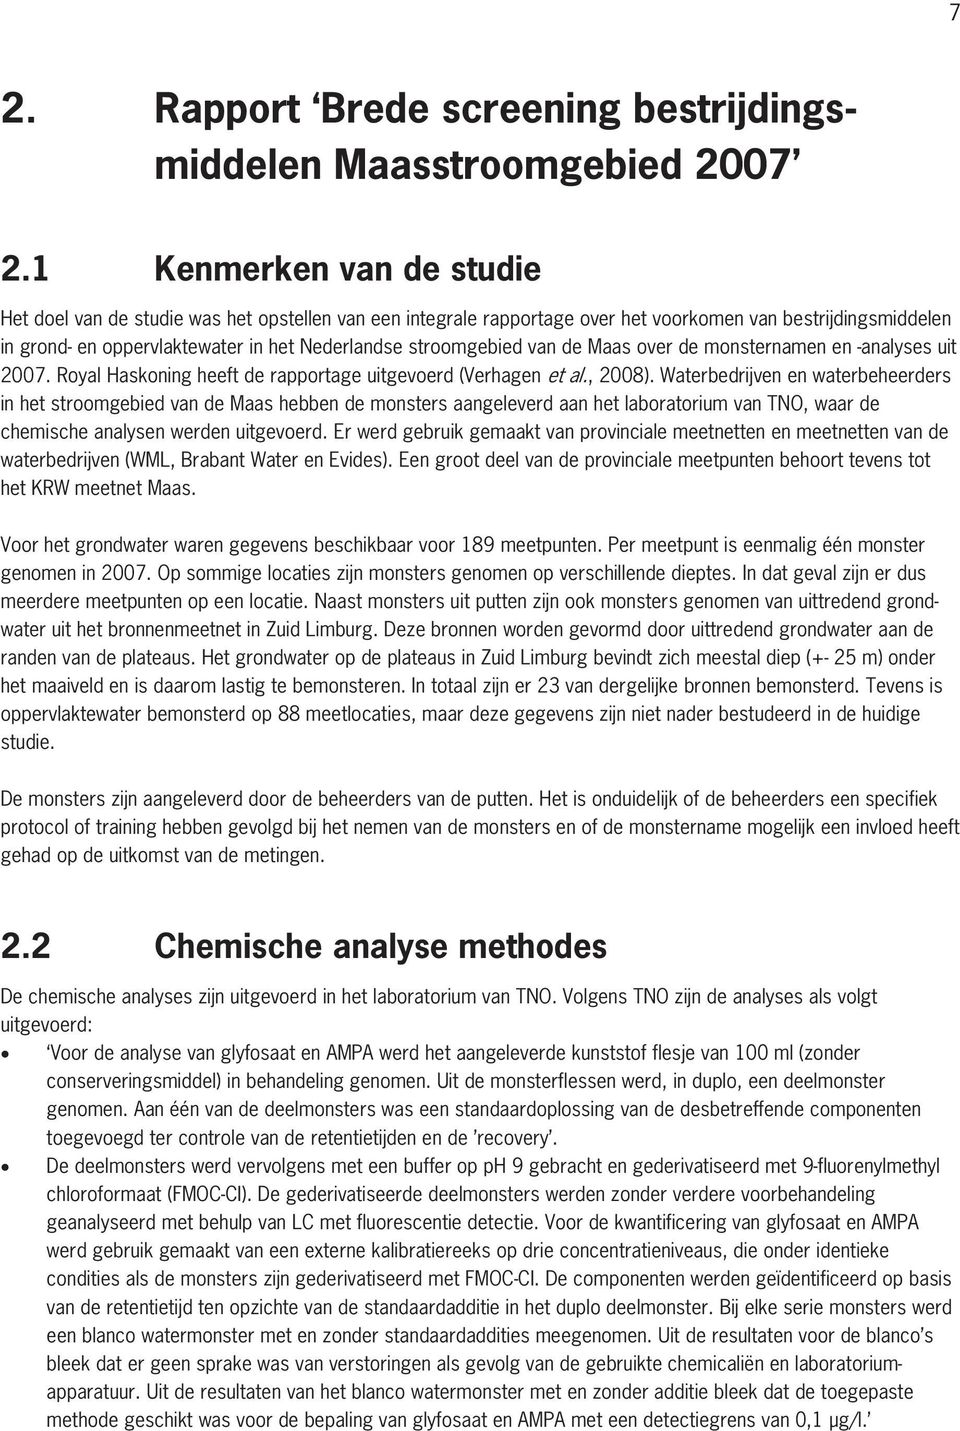 stroomgebied van de Maas over de monsternamen en -analyses uit 2007. Royal Haskoning heeft de rapportage uitgevoerd (Verhagen et al., 2008).